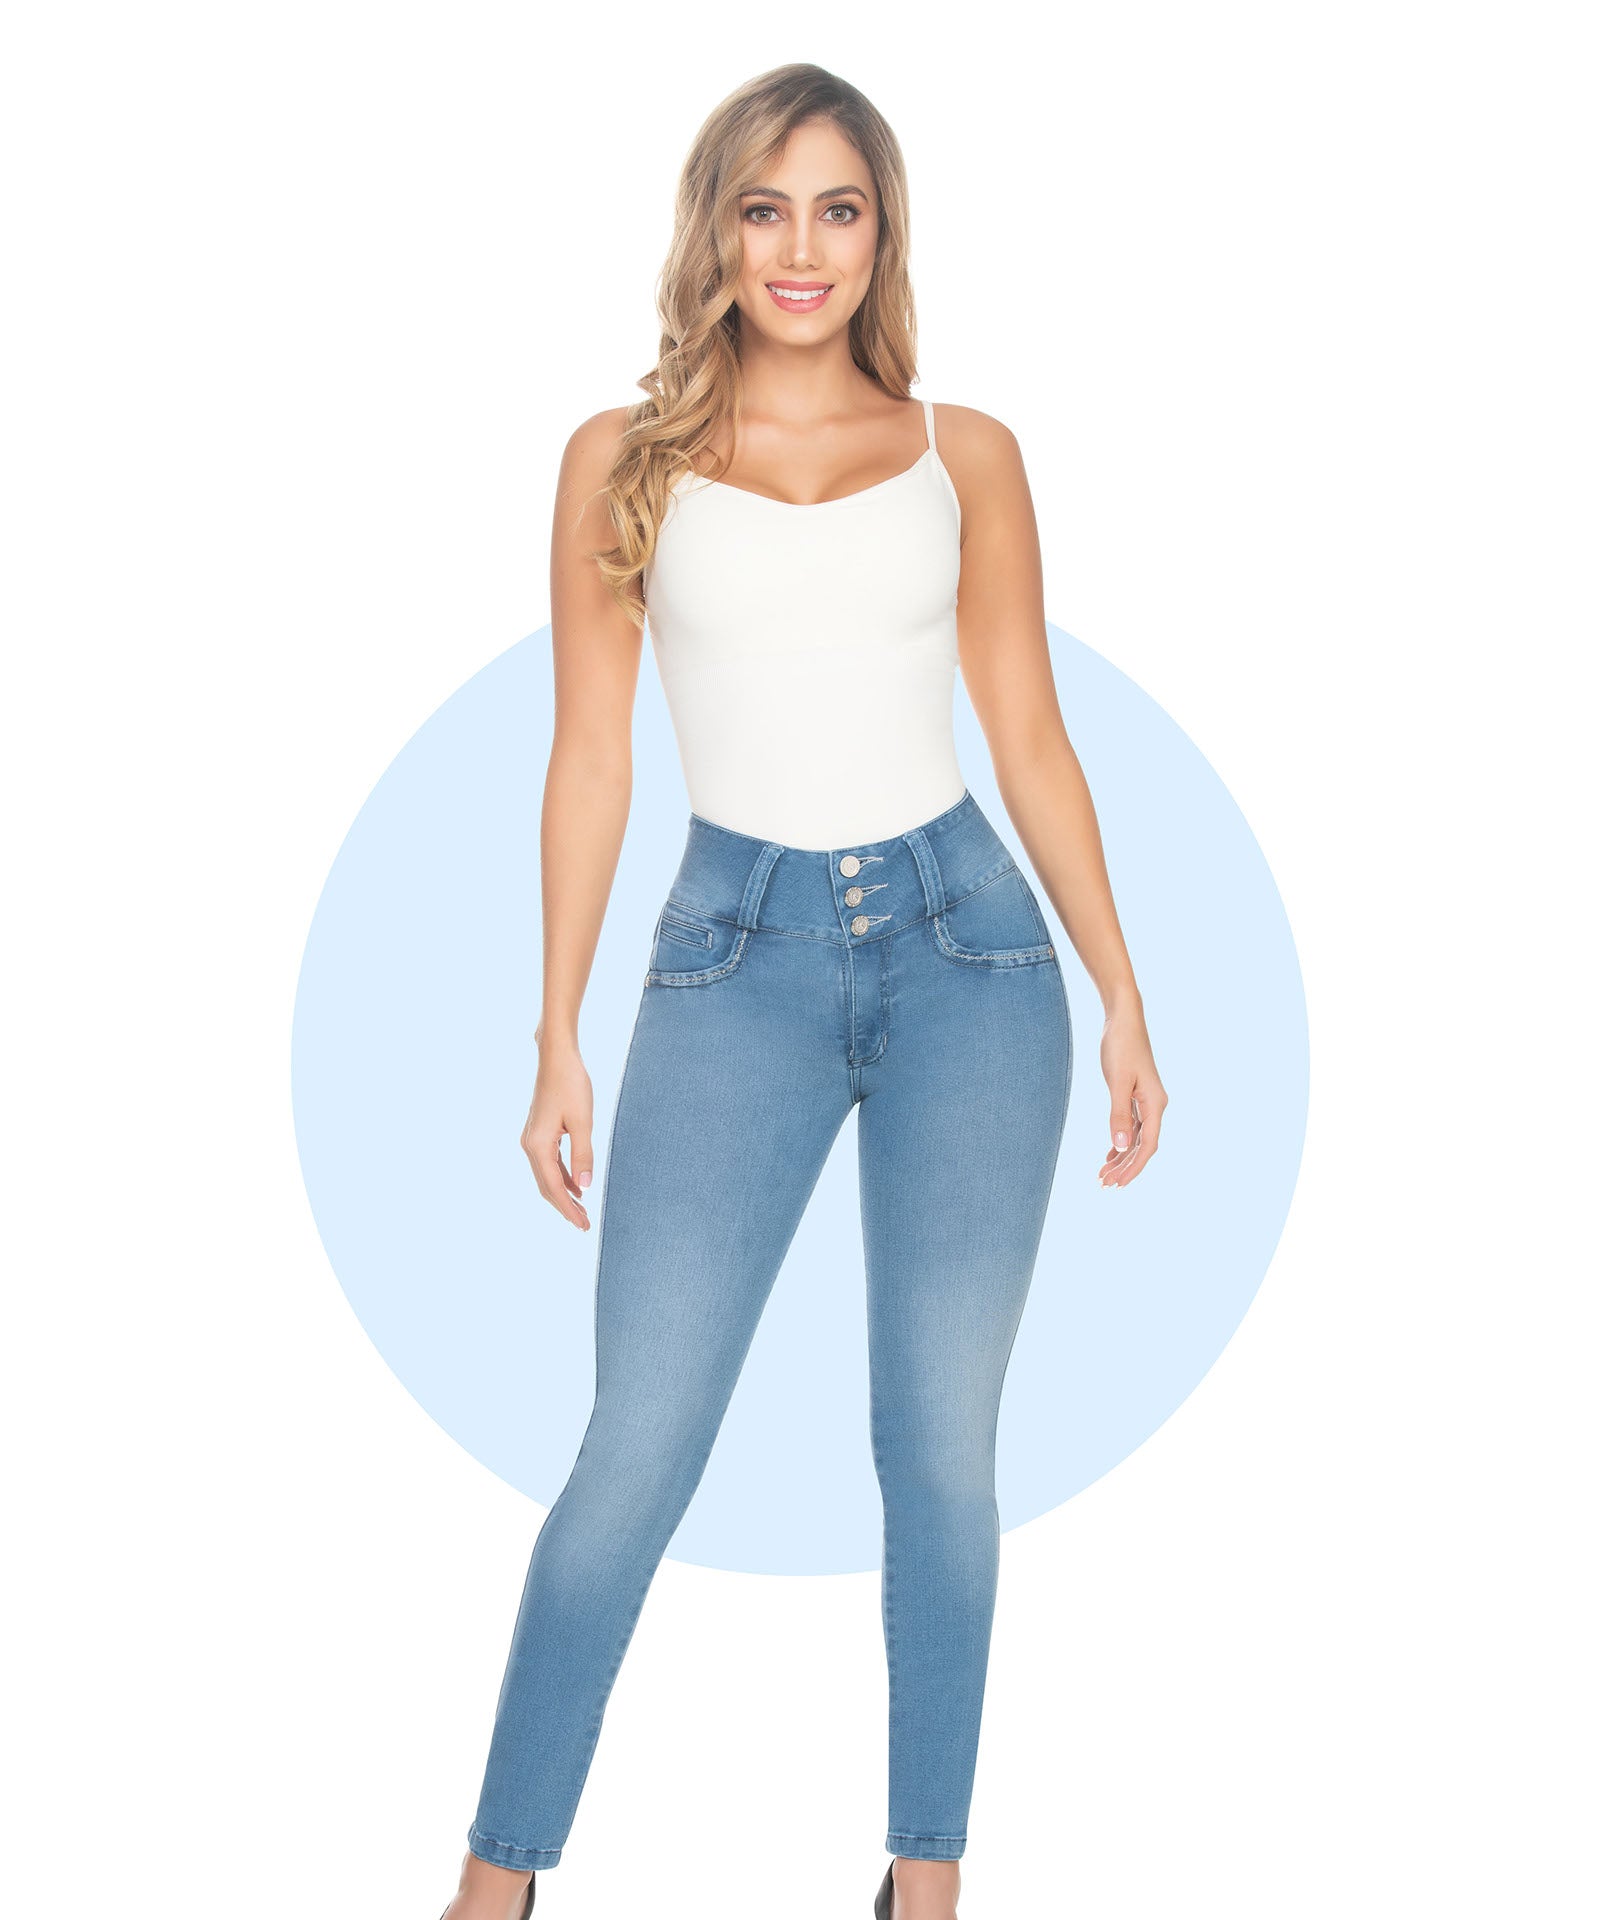 cysm jeans catalogo